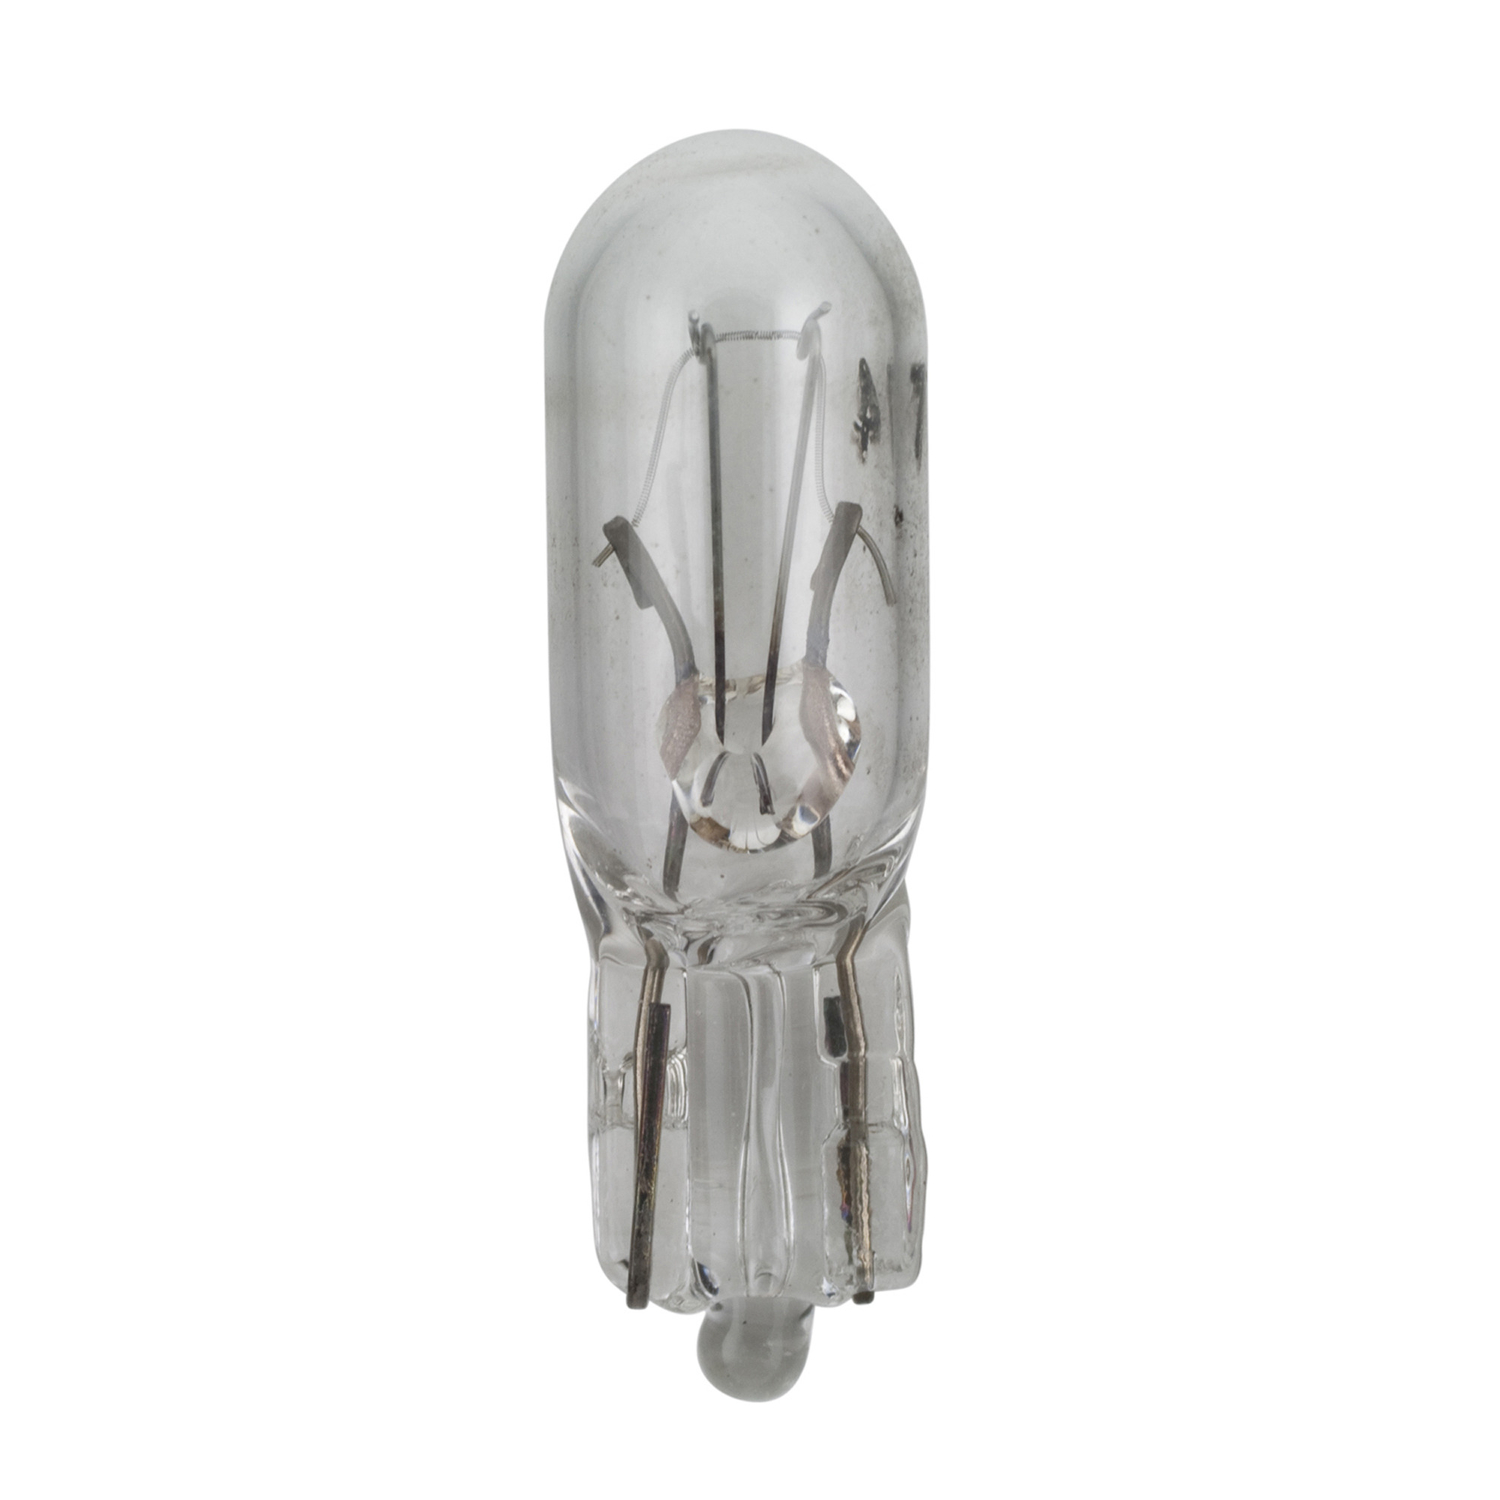 WAGNER LIGHTING - Glove Box Light Bulb - WLP BP74LL